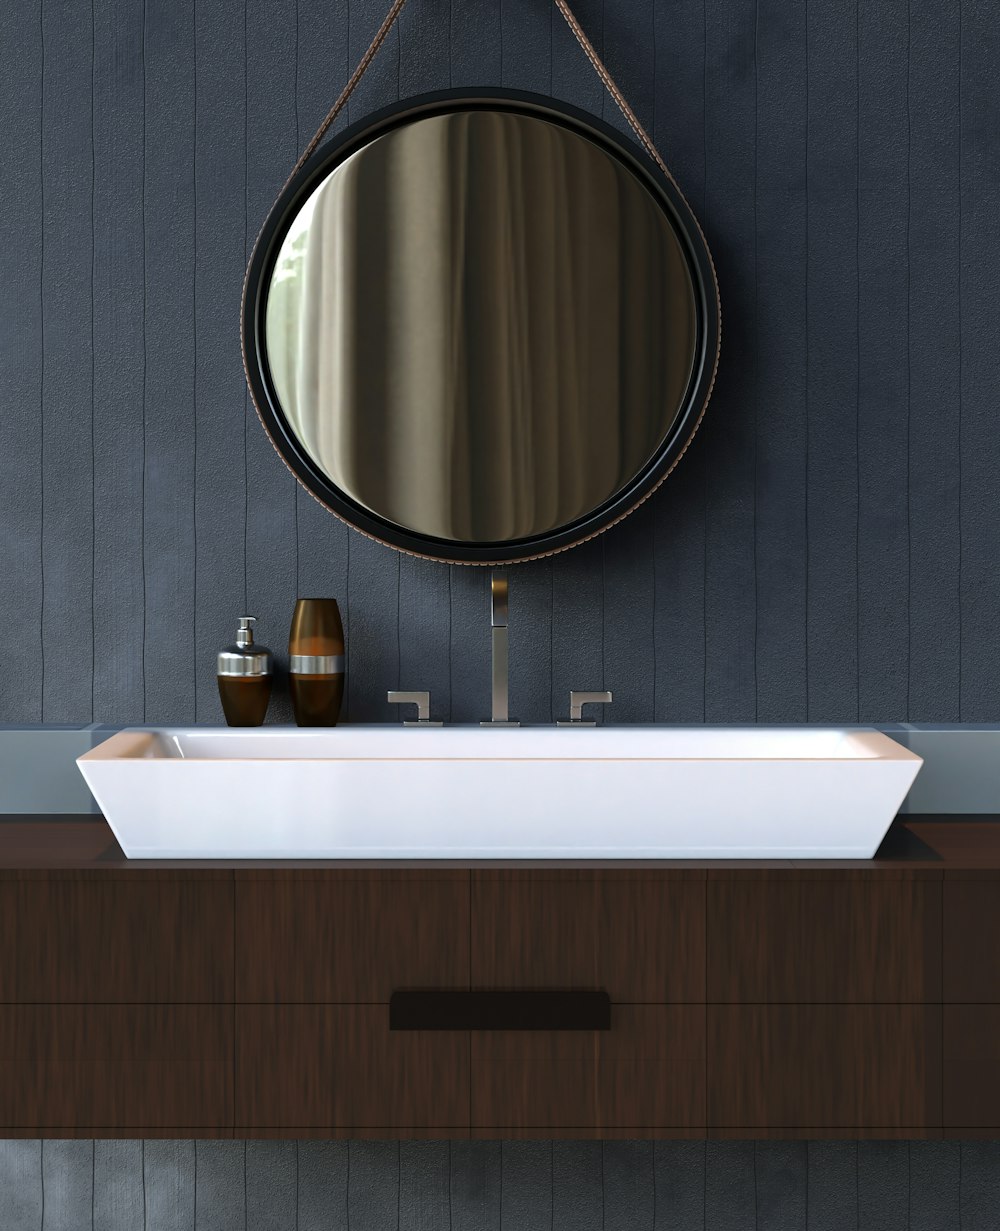 a bathroom sink sitting under a round mirror